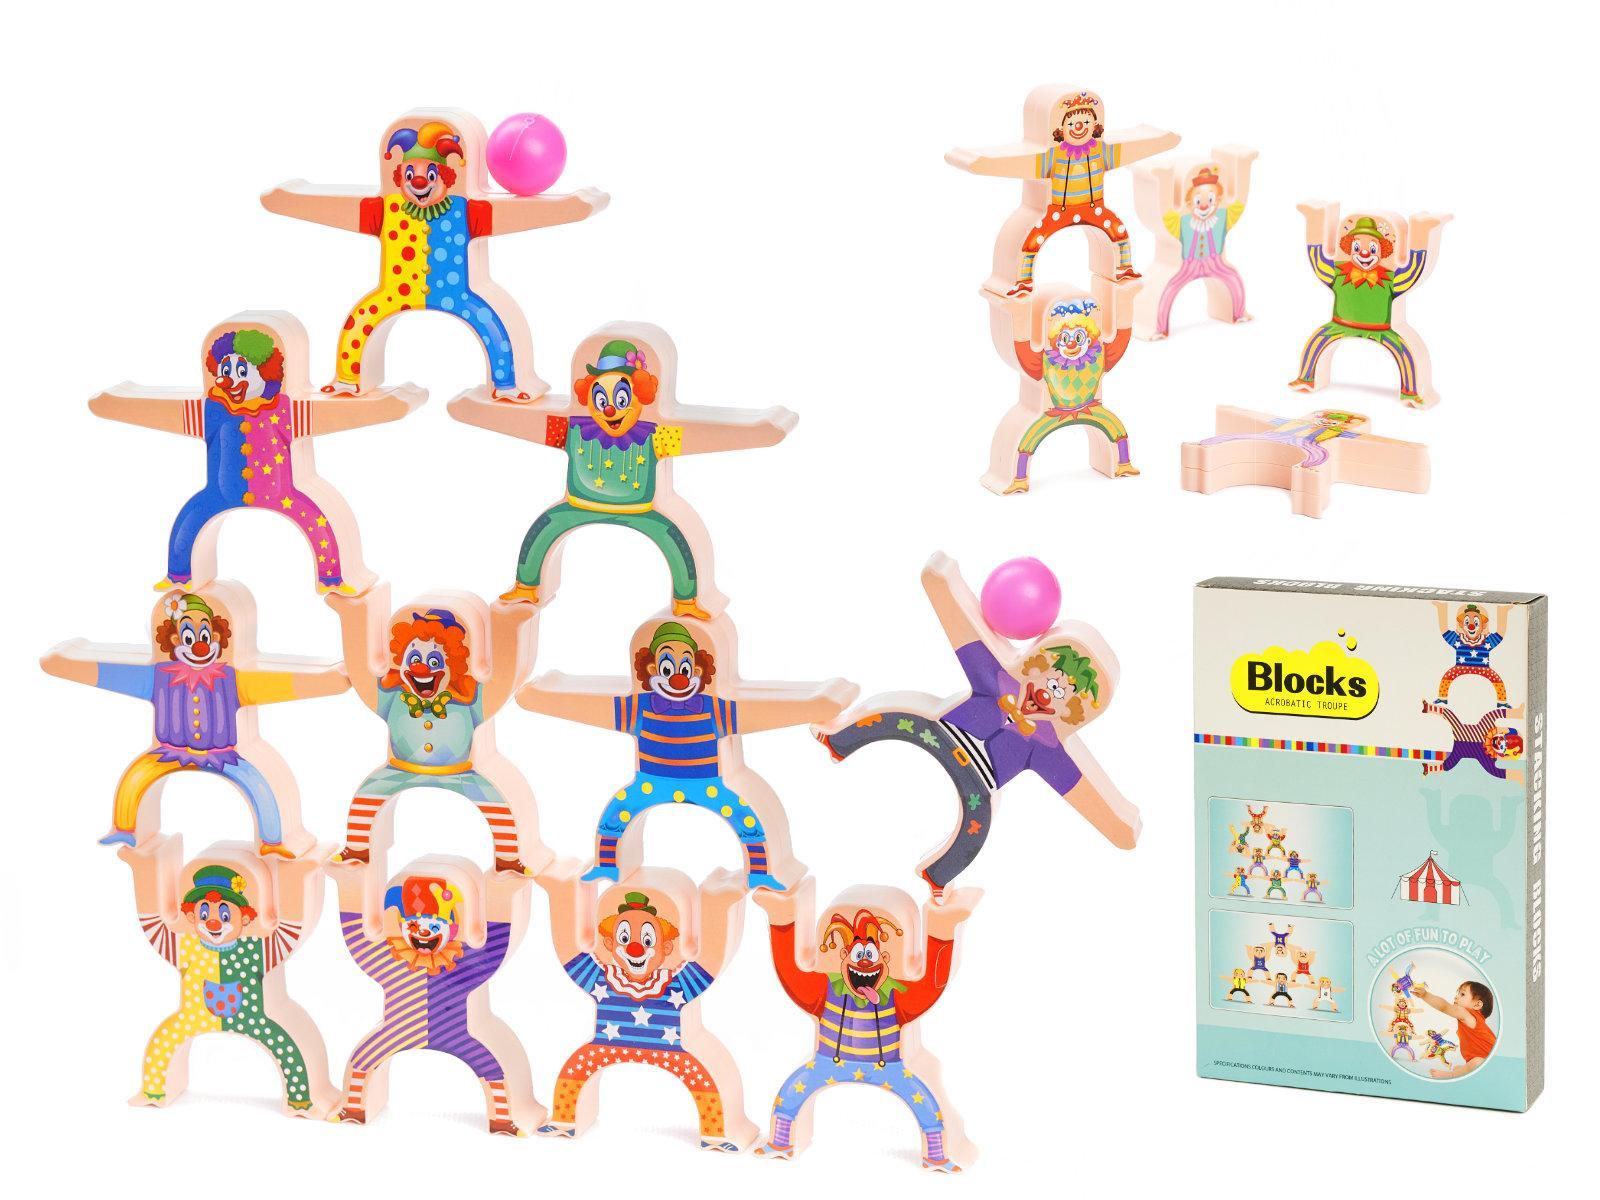 Gra zręcznościowa montessori układanka balansująca wieża klocki klaun 18 elementów dla dzieci 7x8,5x1,5 cm nr. 1